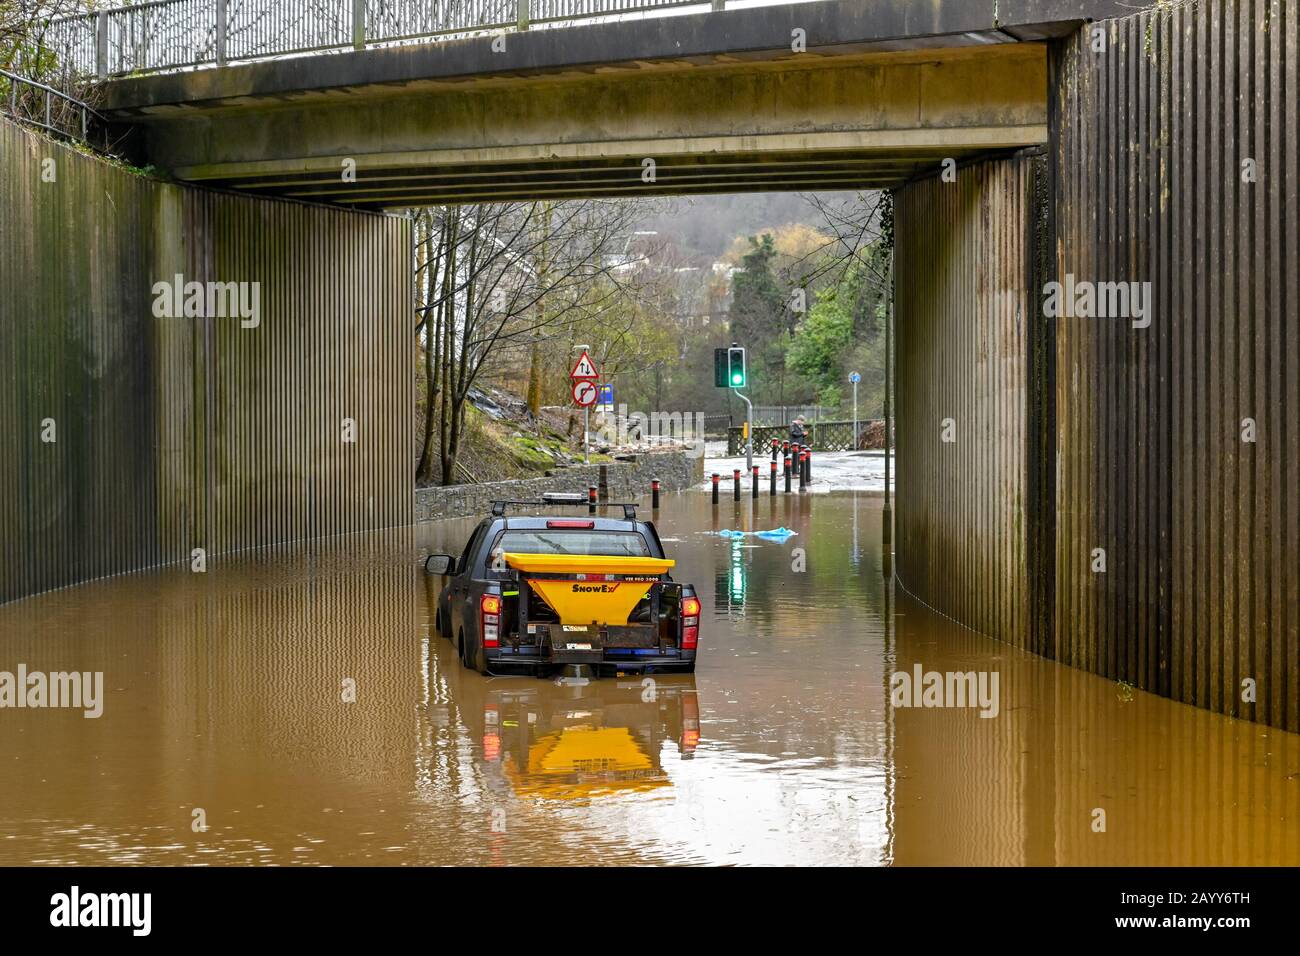 TREFOREST, PAYS DE GALLES - FÉVRIER 2010 : véhicule 4 x 4 coincé dans l'eau de crue sous un pont routier après que la rivière Taff a éclaté ses rives à Treforest, Pays de Galles Banque D'Images